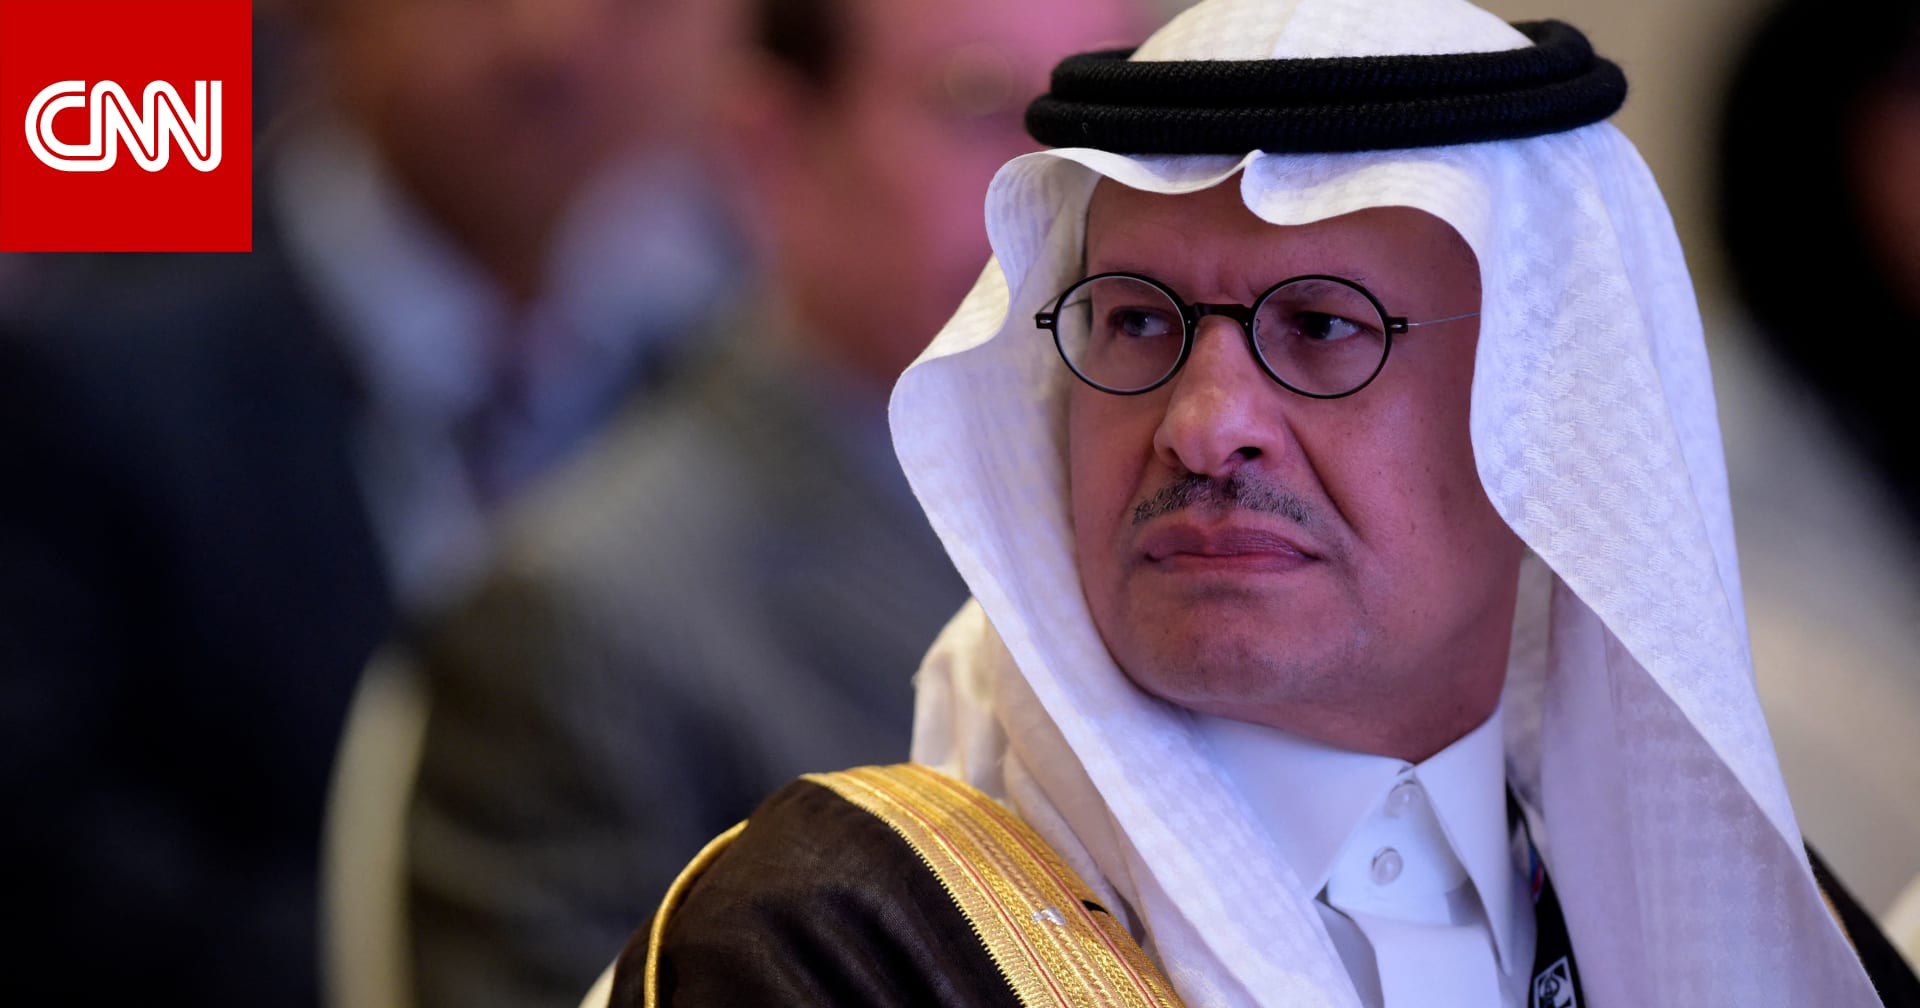 "رسالة لمن يهمه الأمر".. تصريح وزير الطاقة السعودي من روسيا يثير ضجة